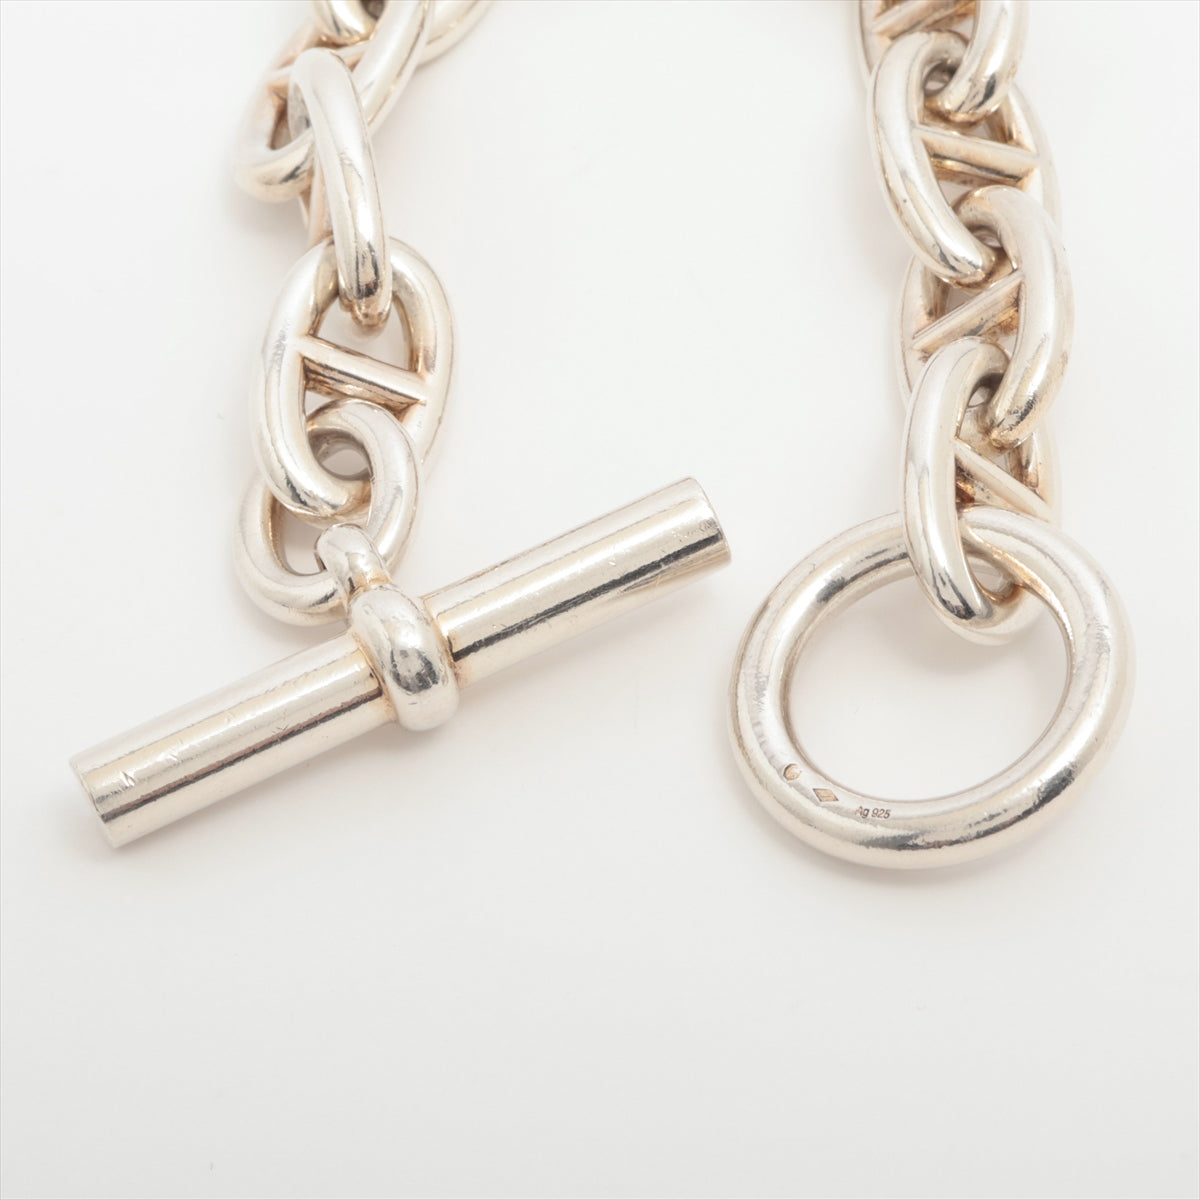 Hermès Chaîne d'Ancre TGM 16D048370 Bracelet 11 frames 925 104.6g Silver